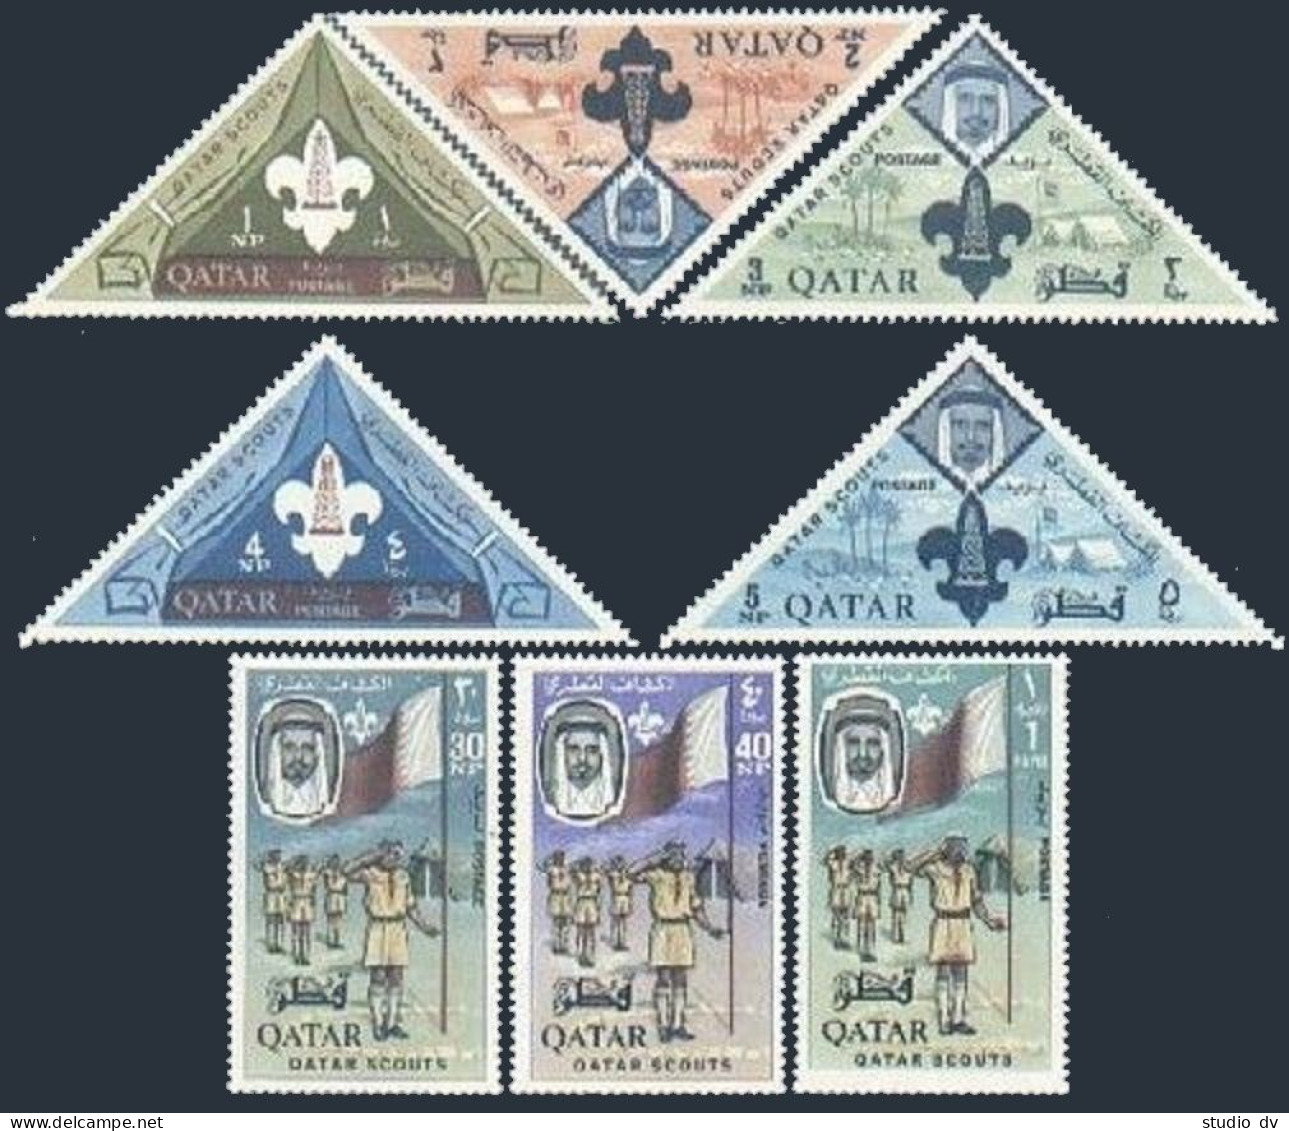 Qatar 53-60, MNH. Michel 53A-60A. Boy Scouts 1965. Emblem, Flag. - Qatar